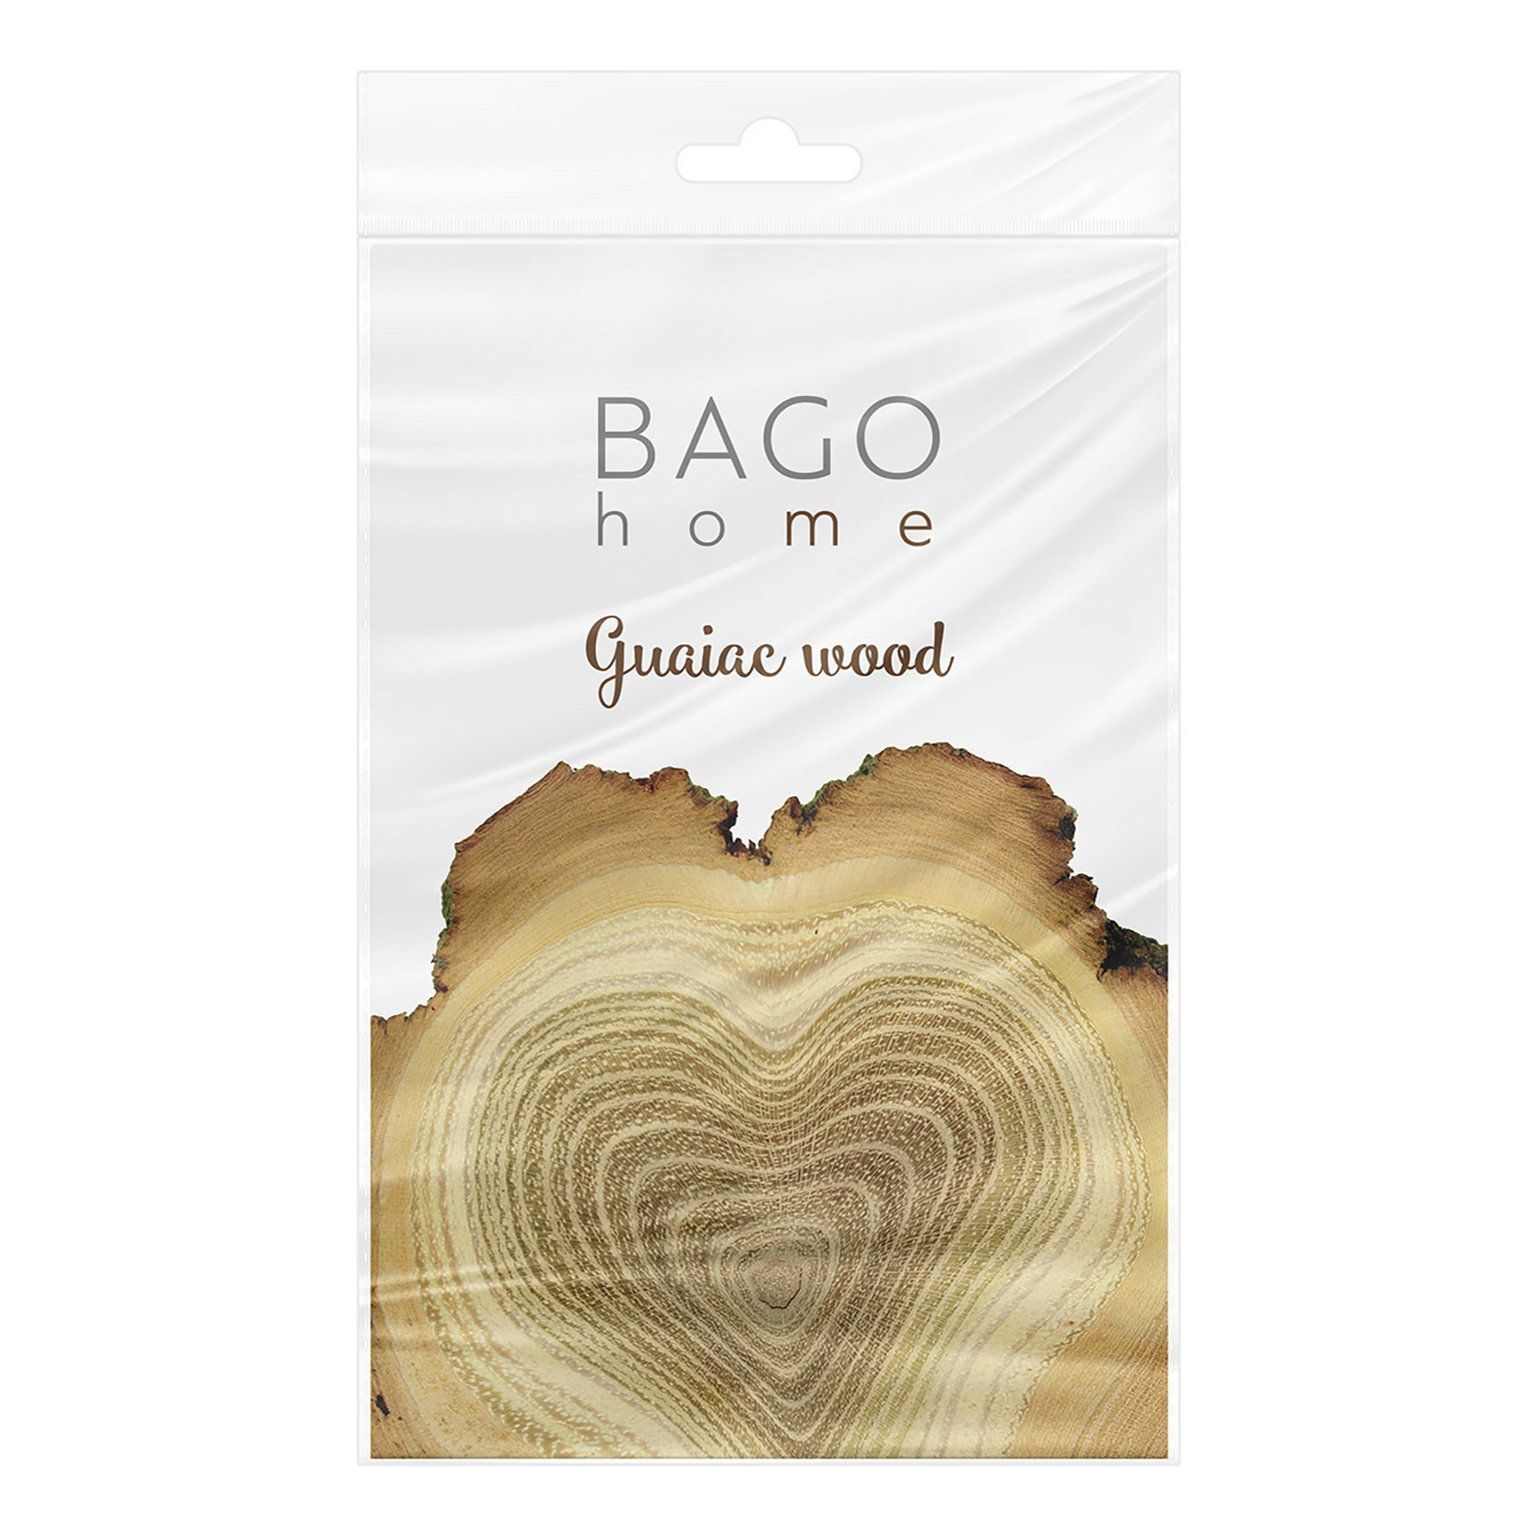 

Саше ароматическое для жилых помещений Bago home Ориджиналс Гваяковое дерево 15 г